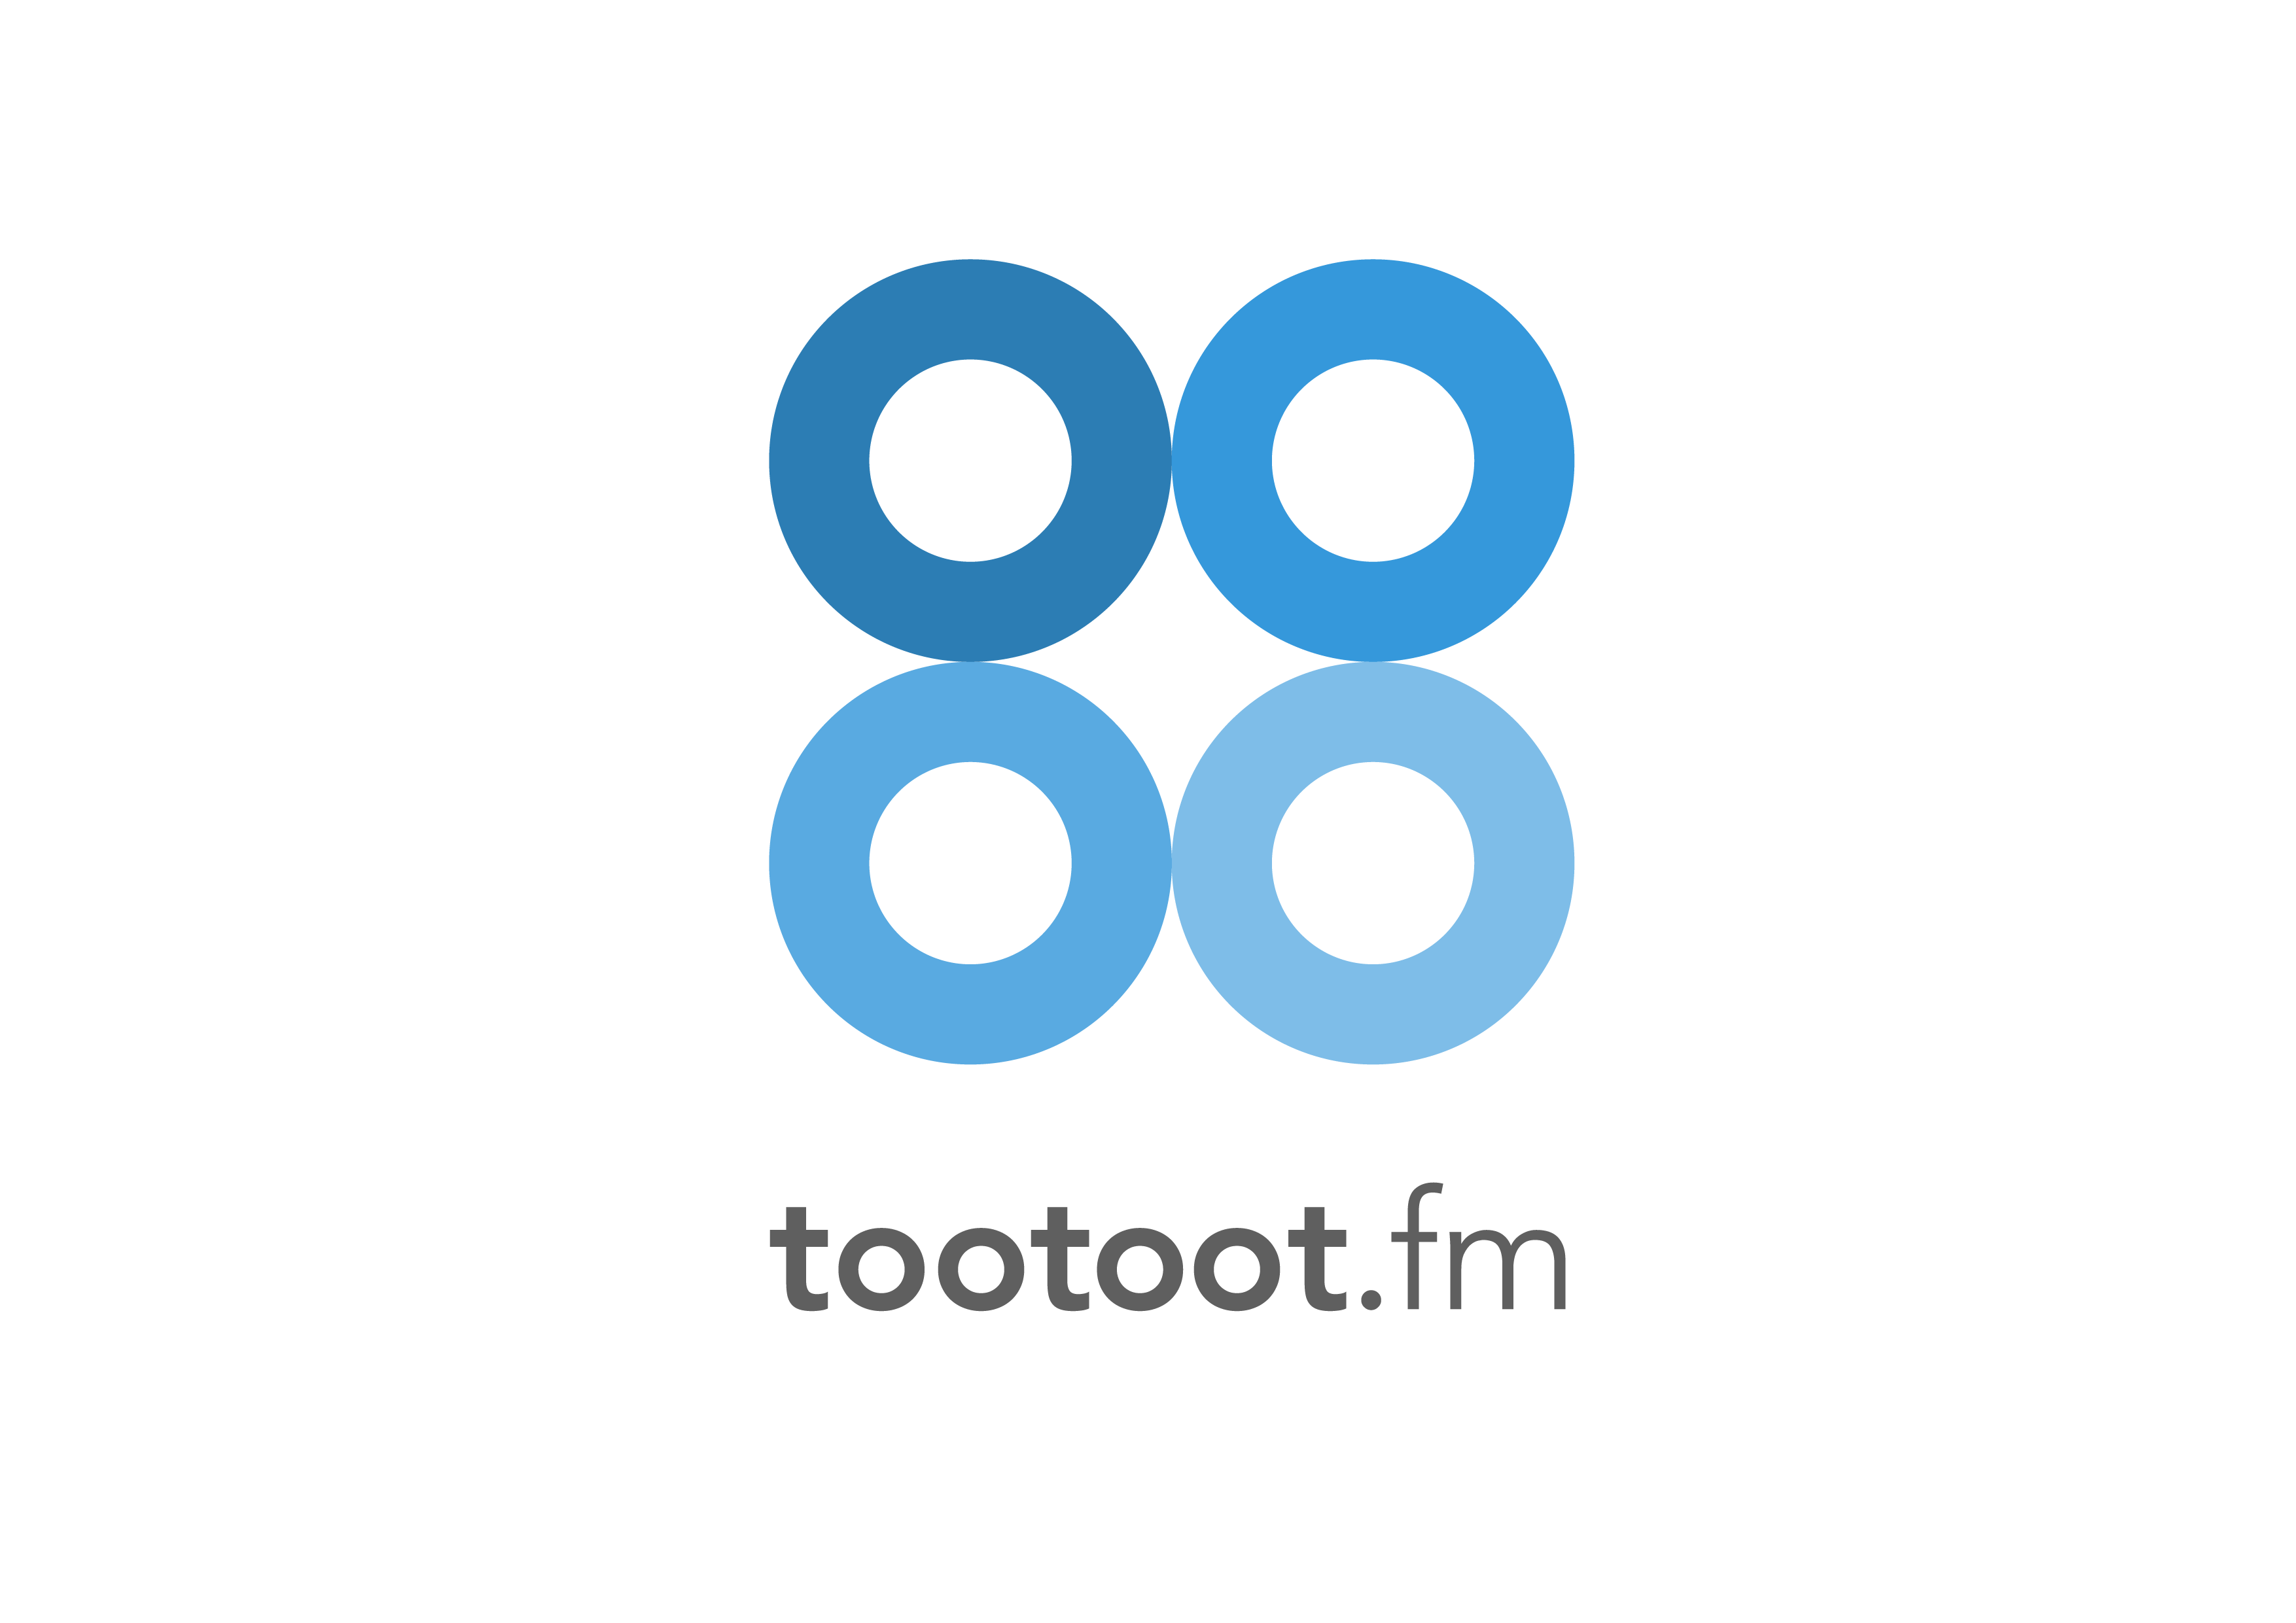 tootoot logo